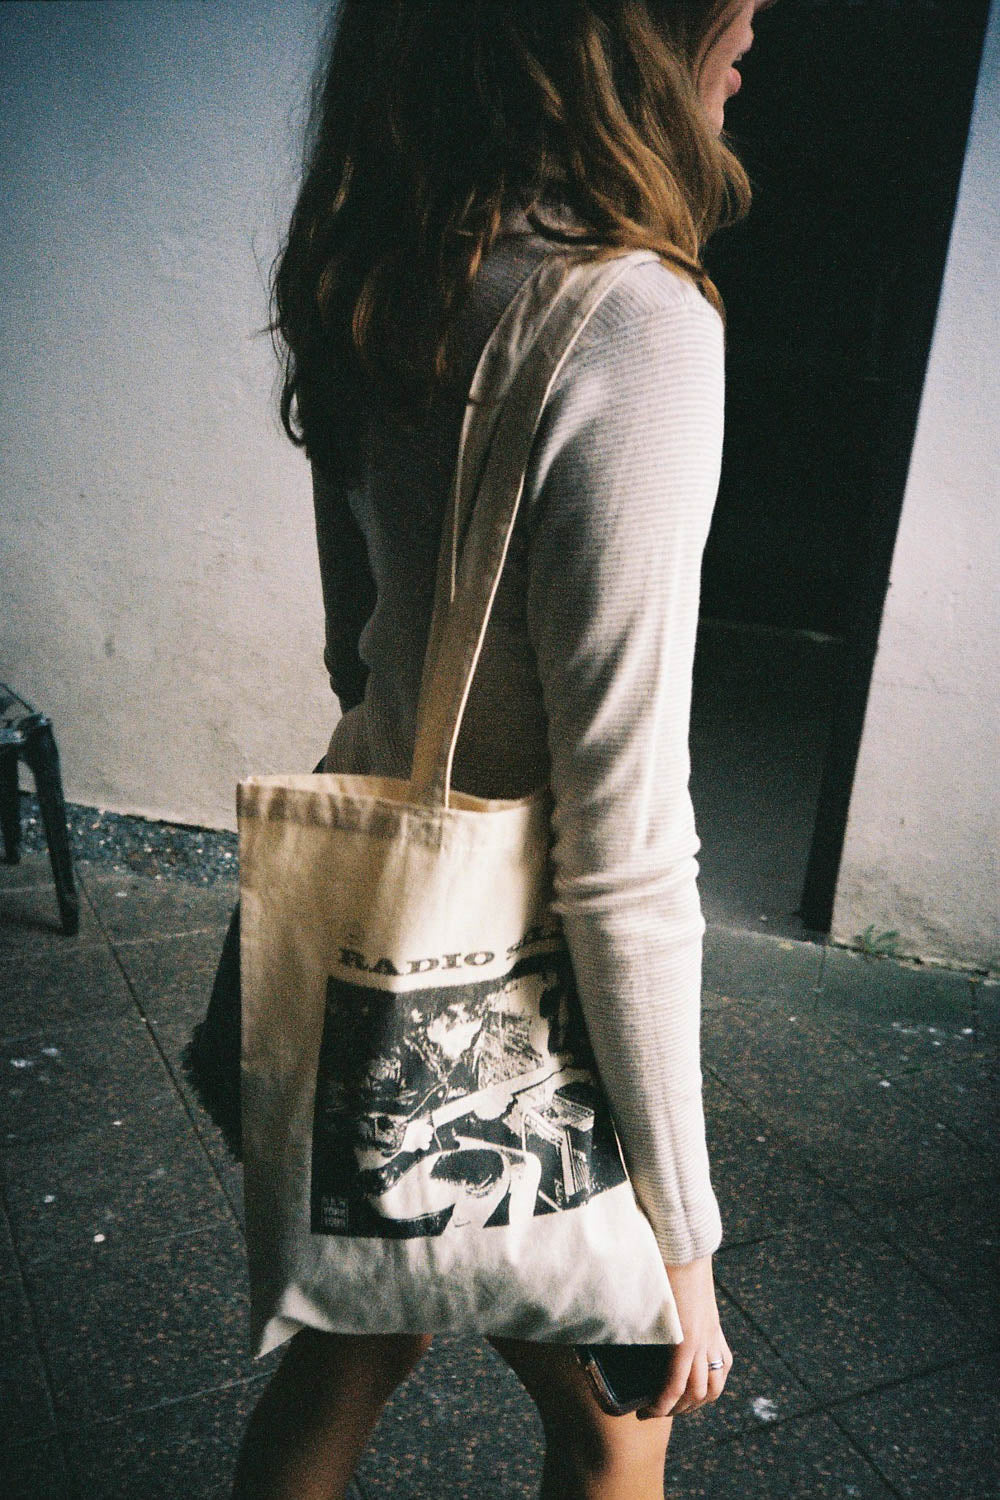 Brandy Melville Shoulder Bag